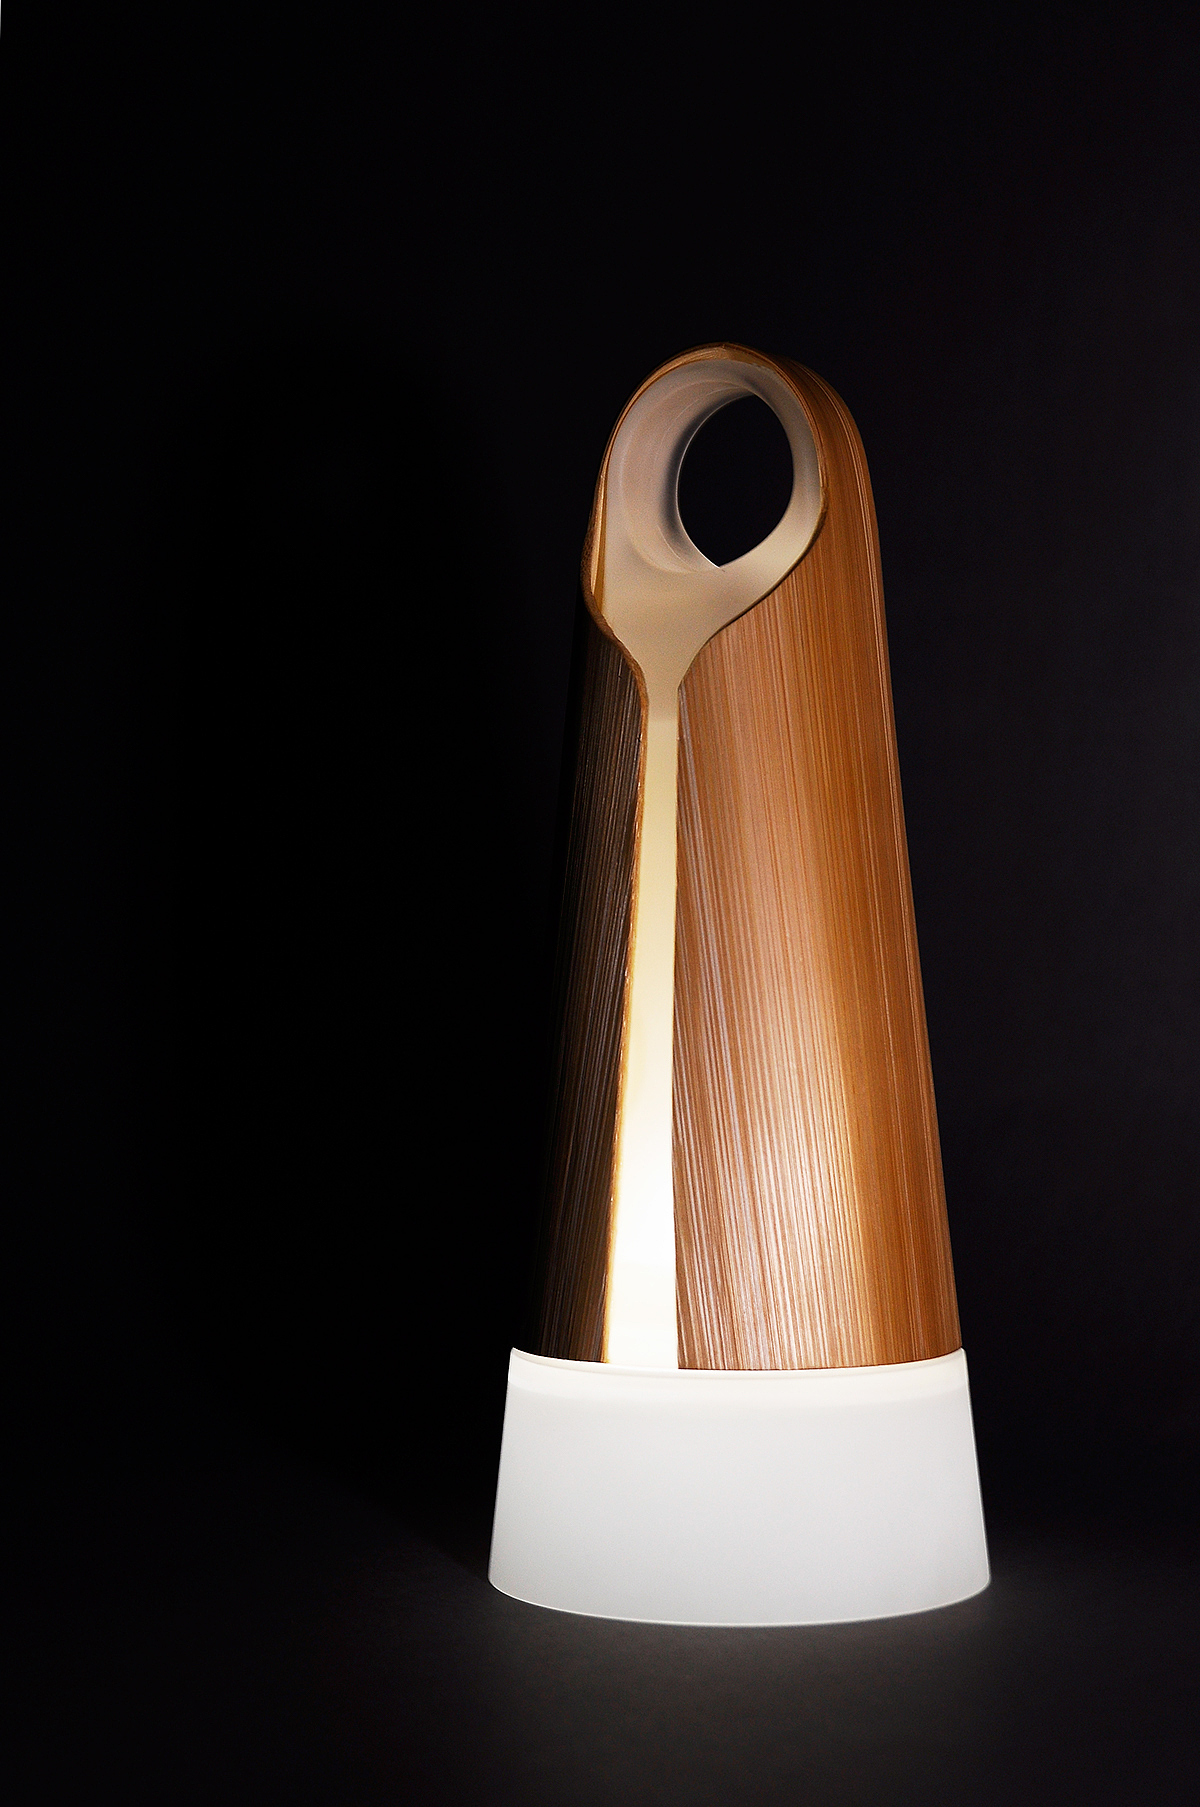 第二届安吉“两山杯”国际竹产品创意设计大奖赛作品初评结果出炉-优概念